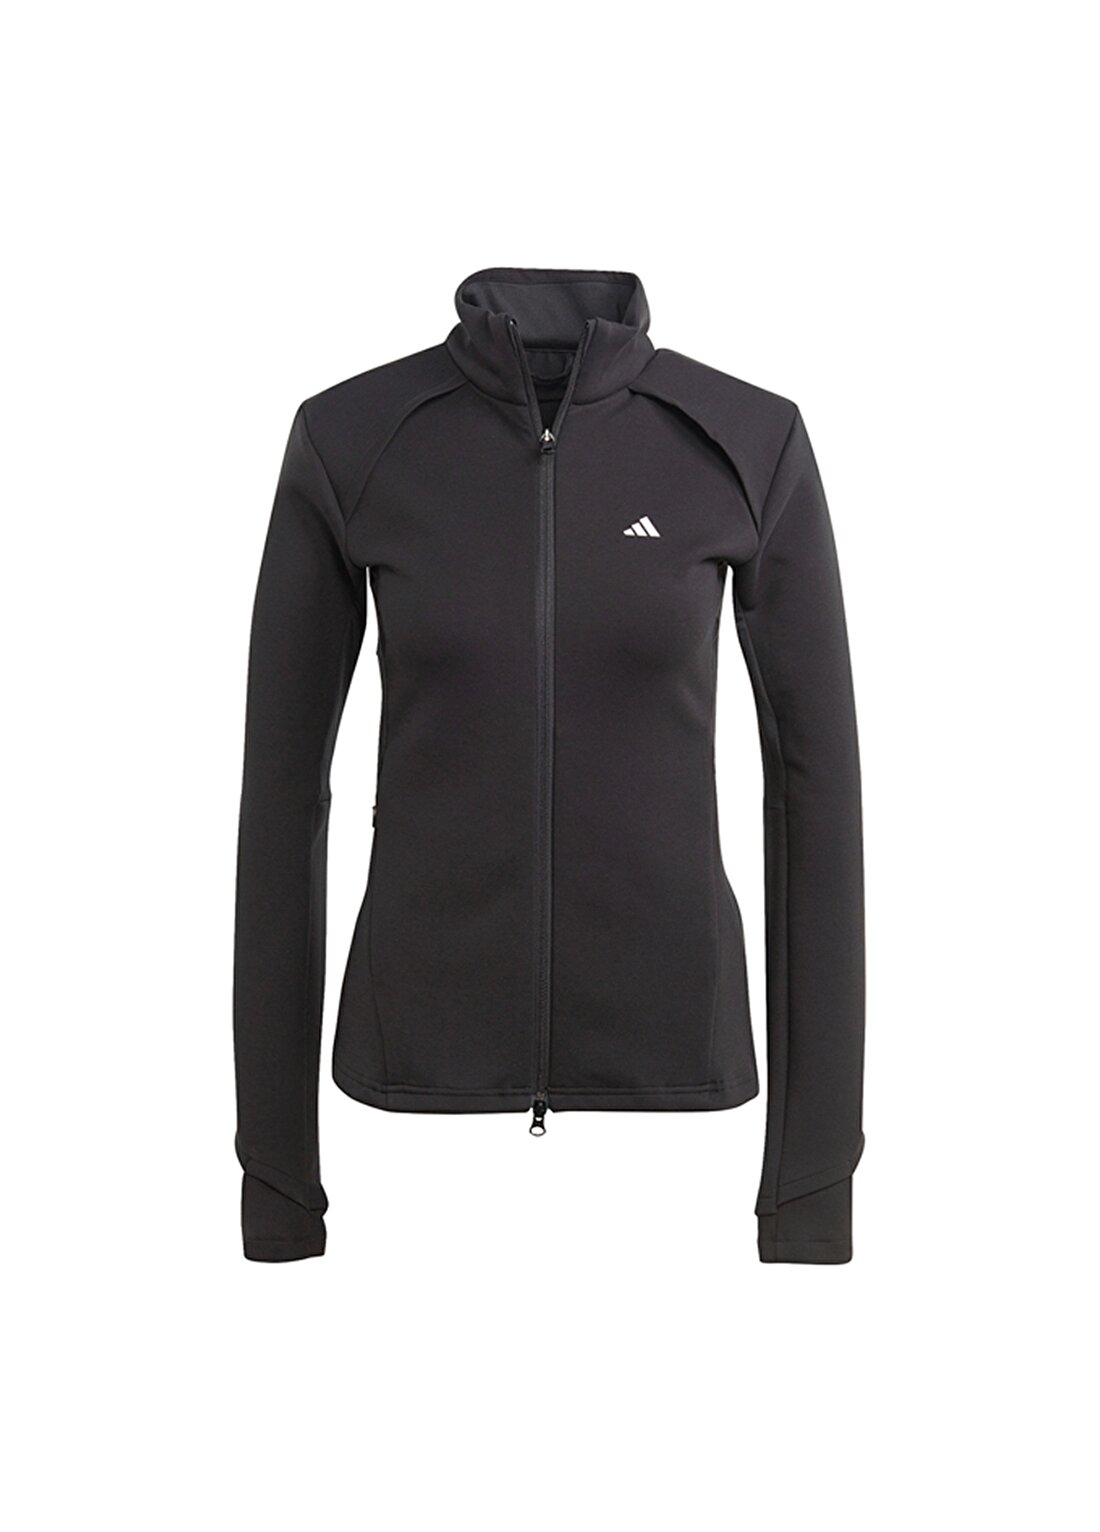 Adidas Siyah Kadın Dik Yaka Zip Ceket HY9227-ADIDAS TRN